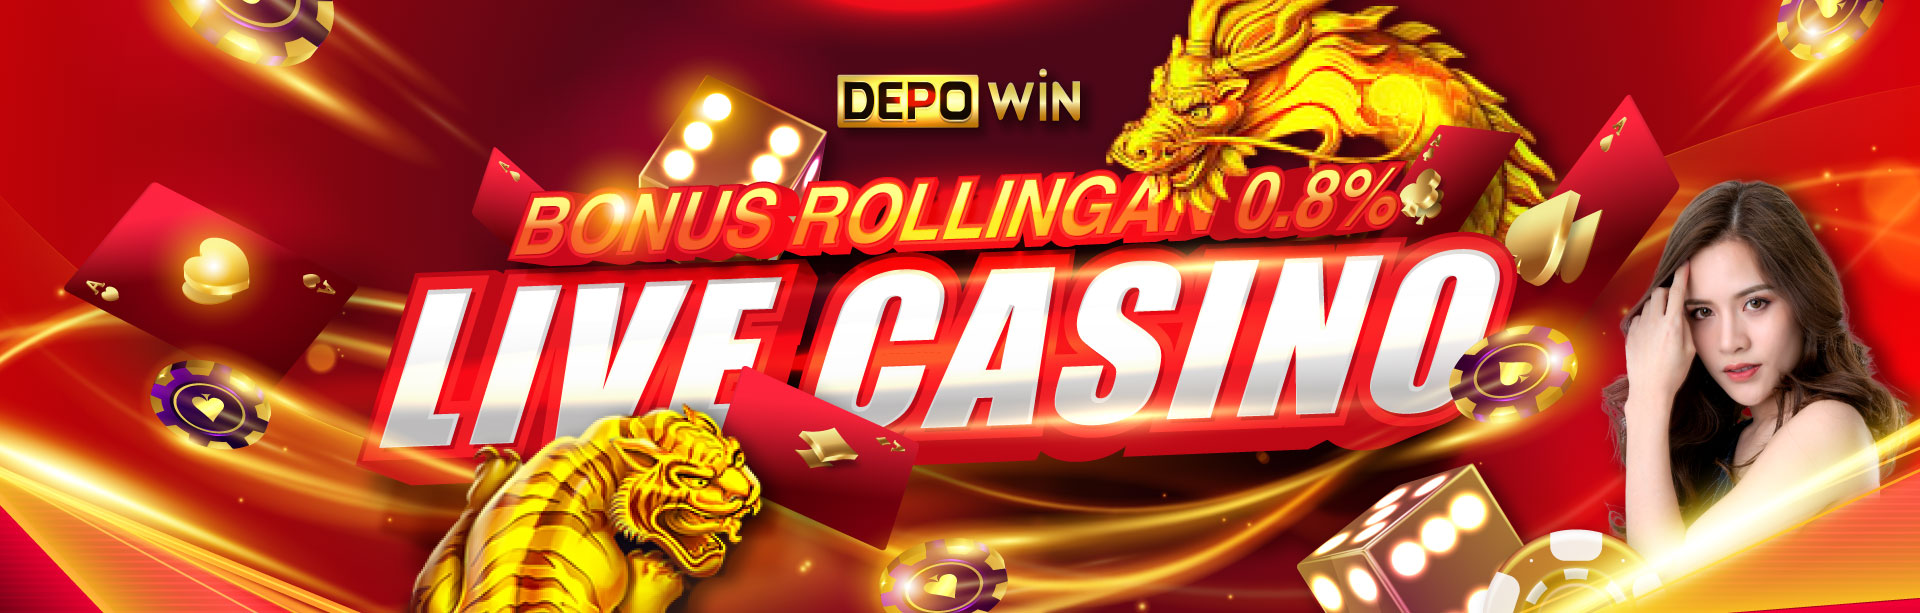 Bonus Commission 0.8% Live Casino